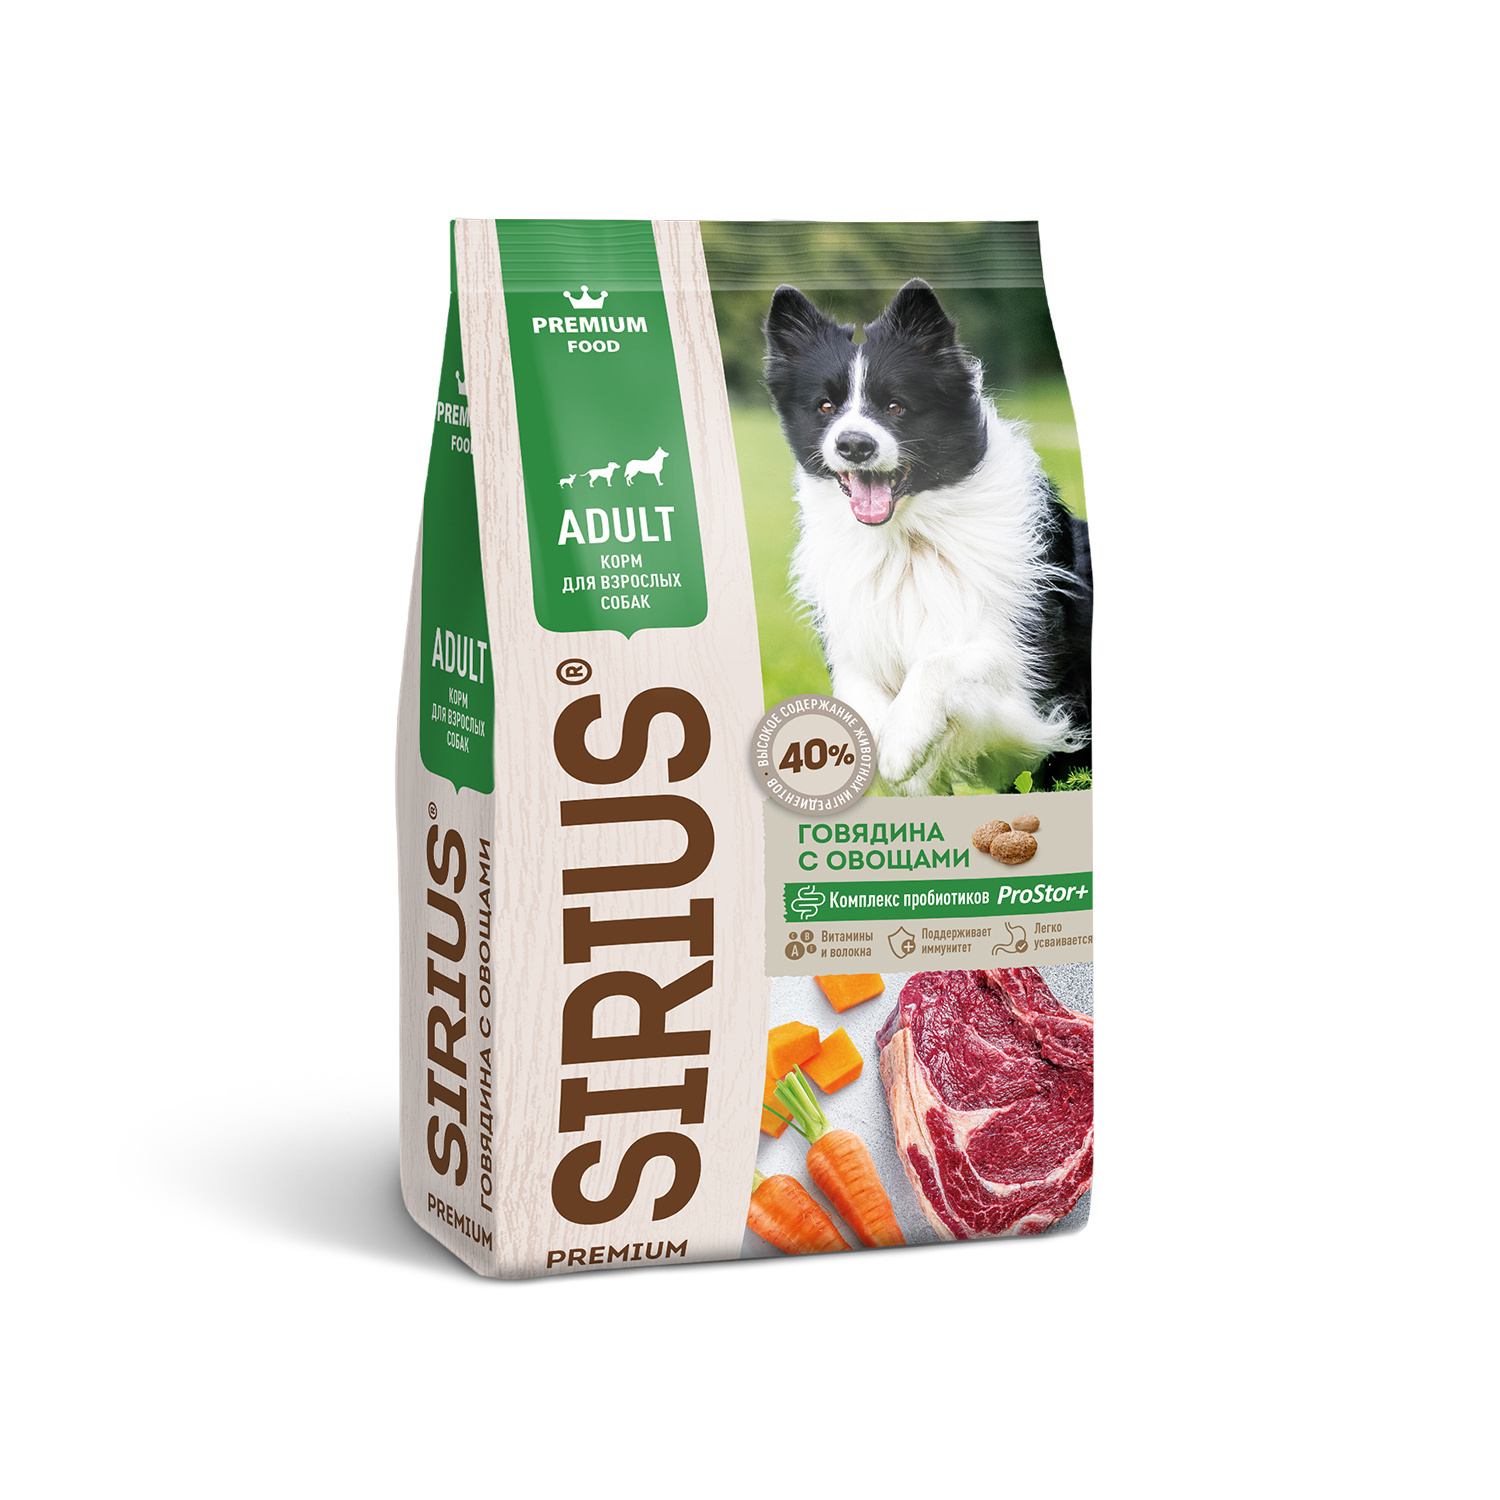 Sirius Sirius сухой корм для собак, говядина с овощами (15 кг) sirius sirius сухой корм для щенков и молодых собак ягненок с рисом 15 кг